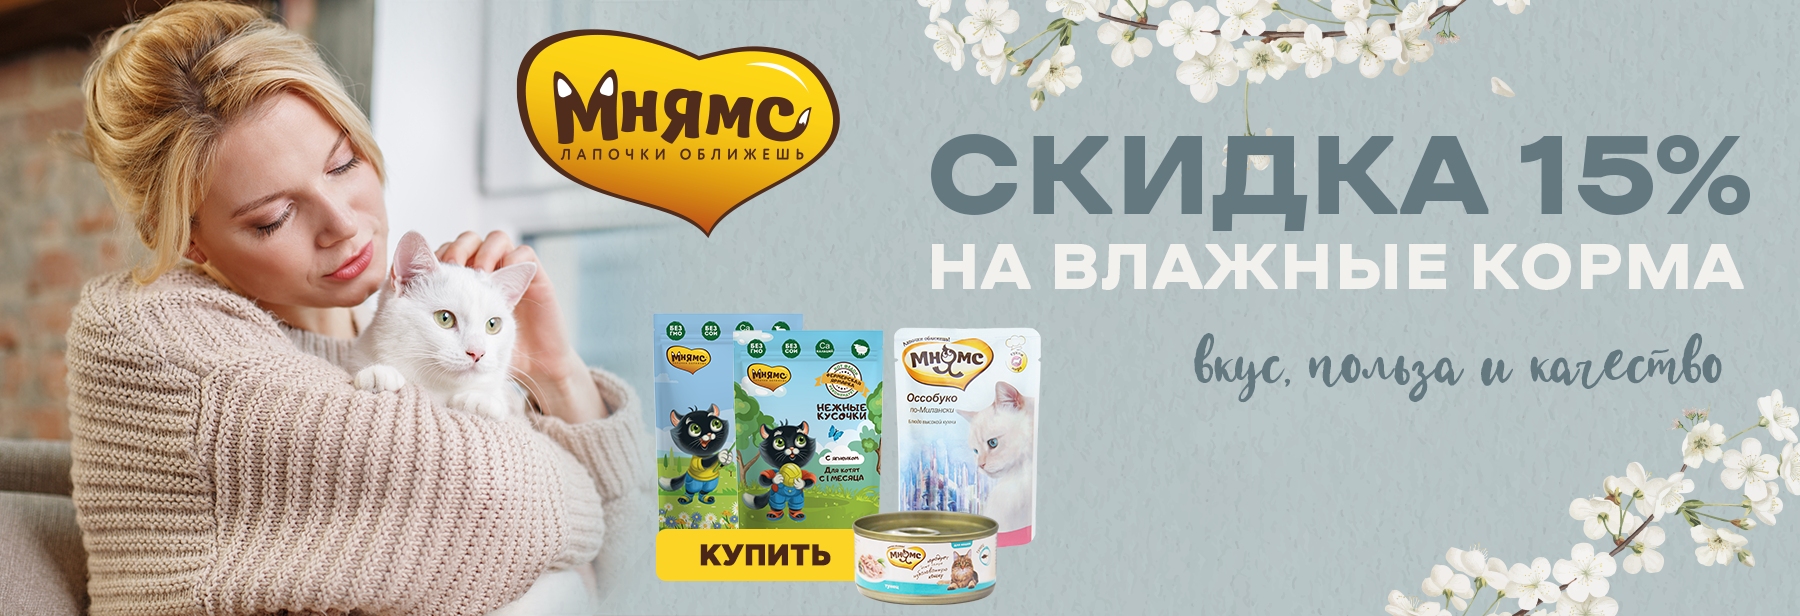 Купить влажные рационы Мнямс для кошек со скидкой 15% в марте 2021 в Калининграде